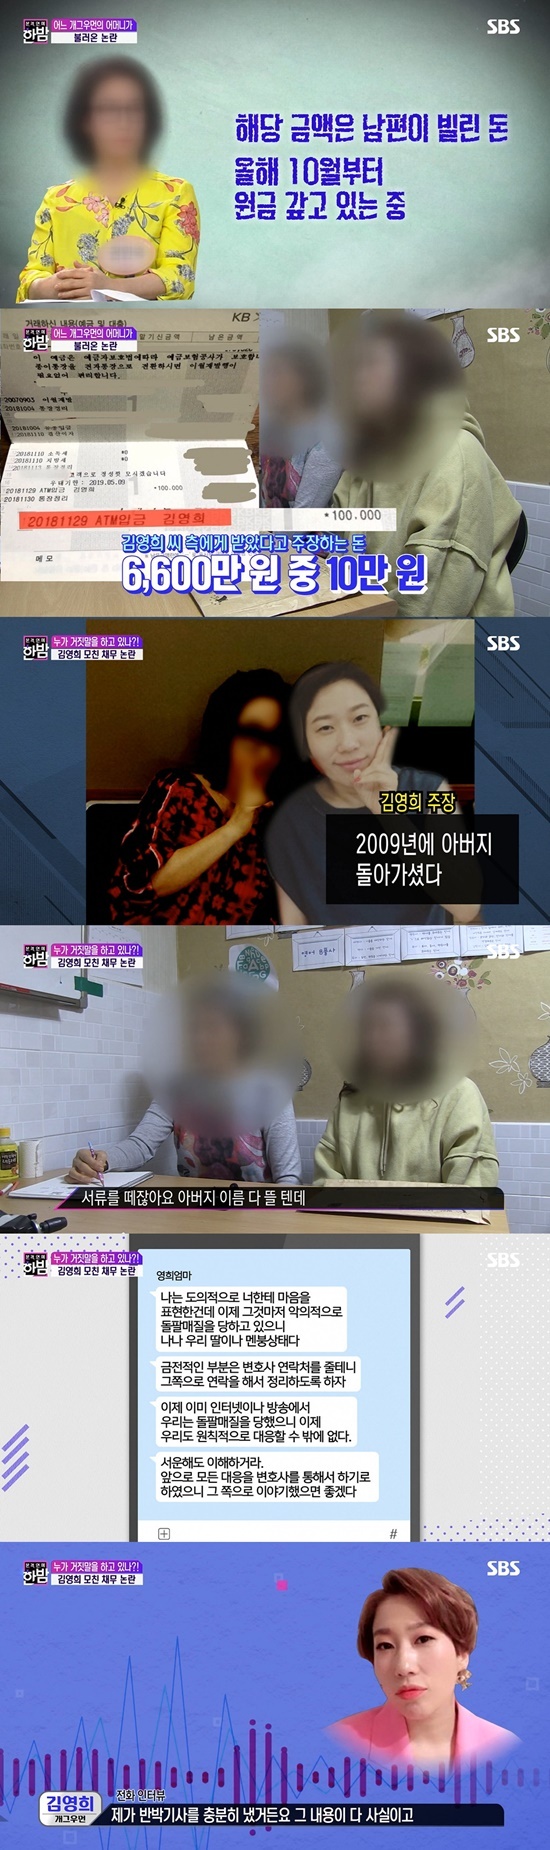 SBS '본격연예 한밤' 방송 화면 캡처 © News1